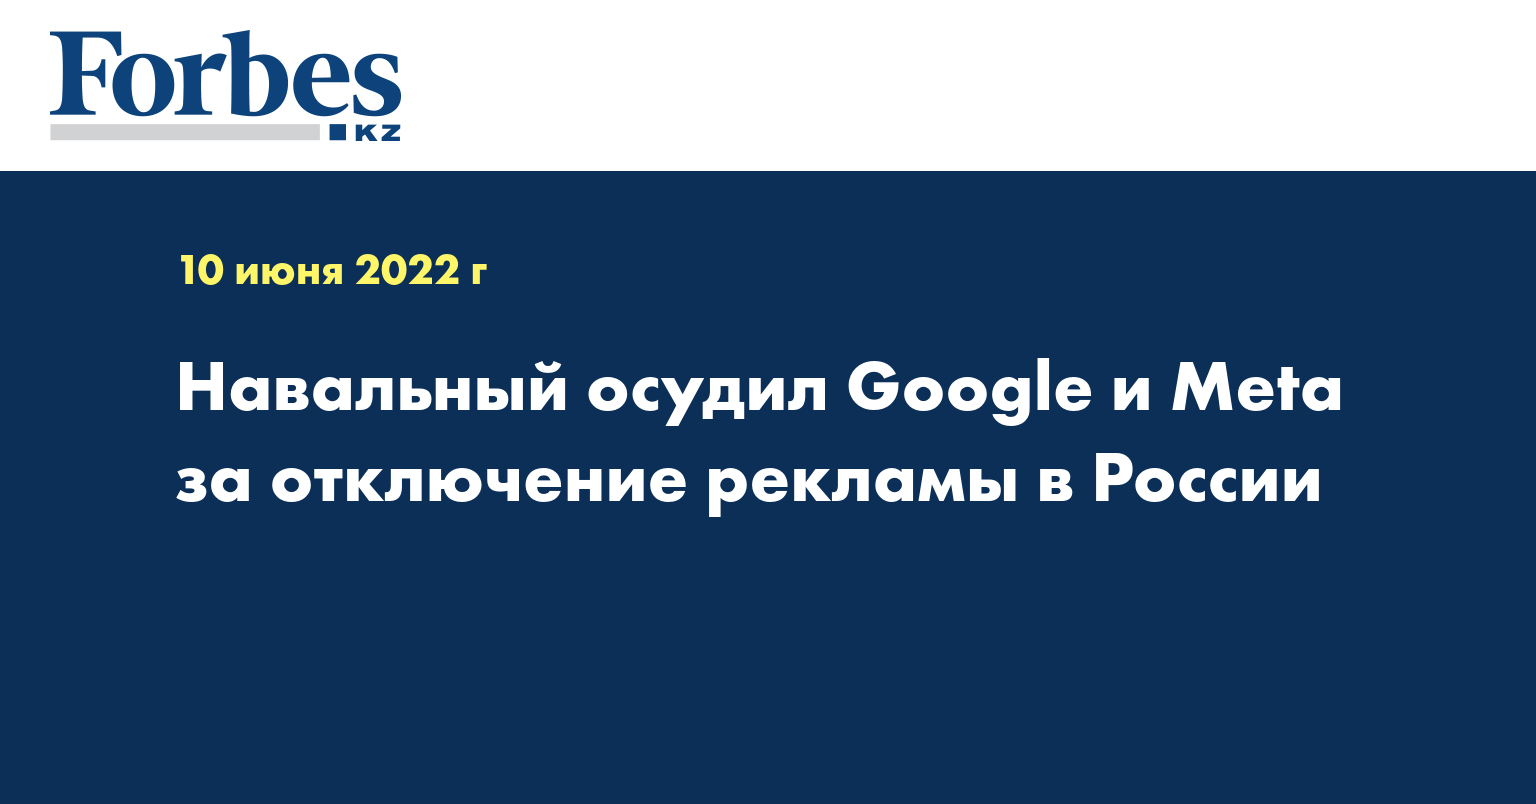 Навальный осудил Google и Meta за отключение рекламы в России